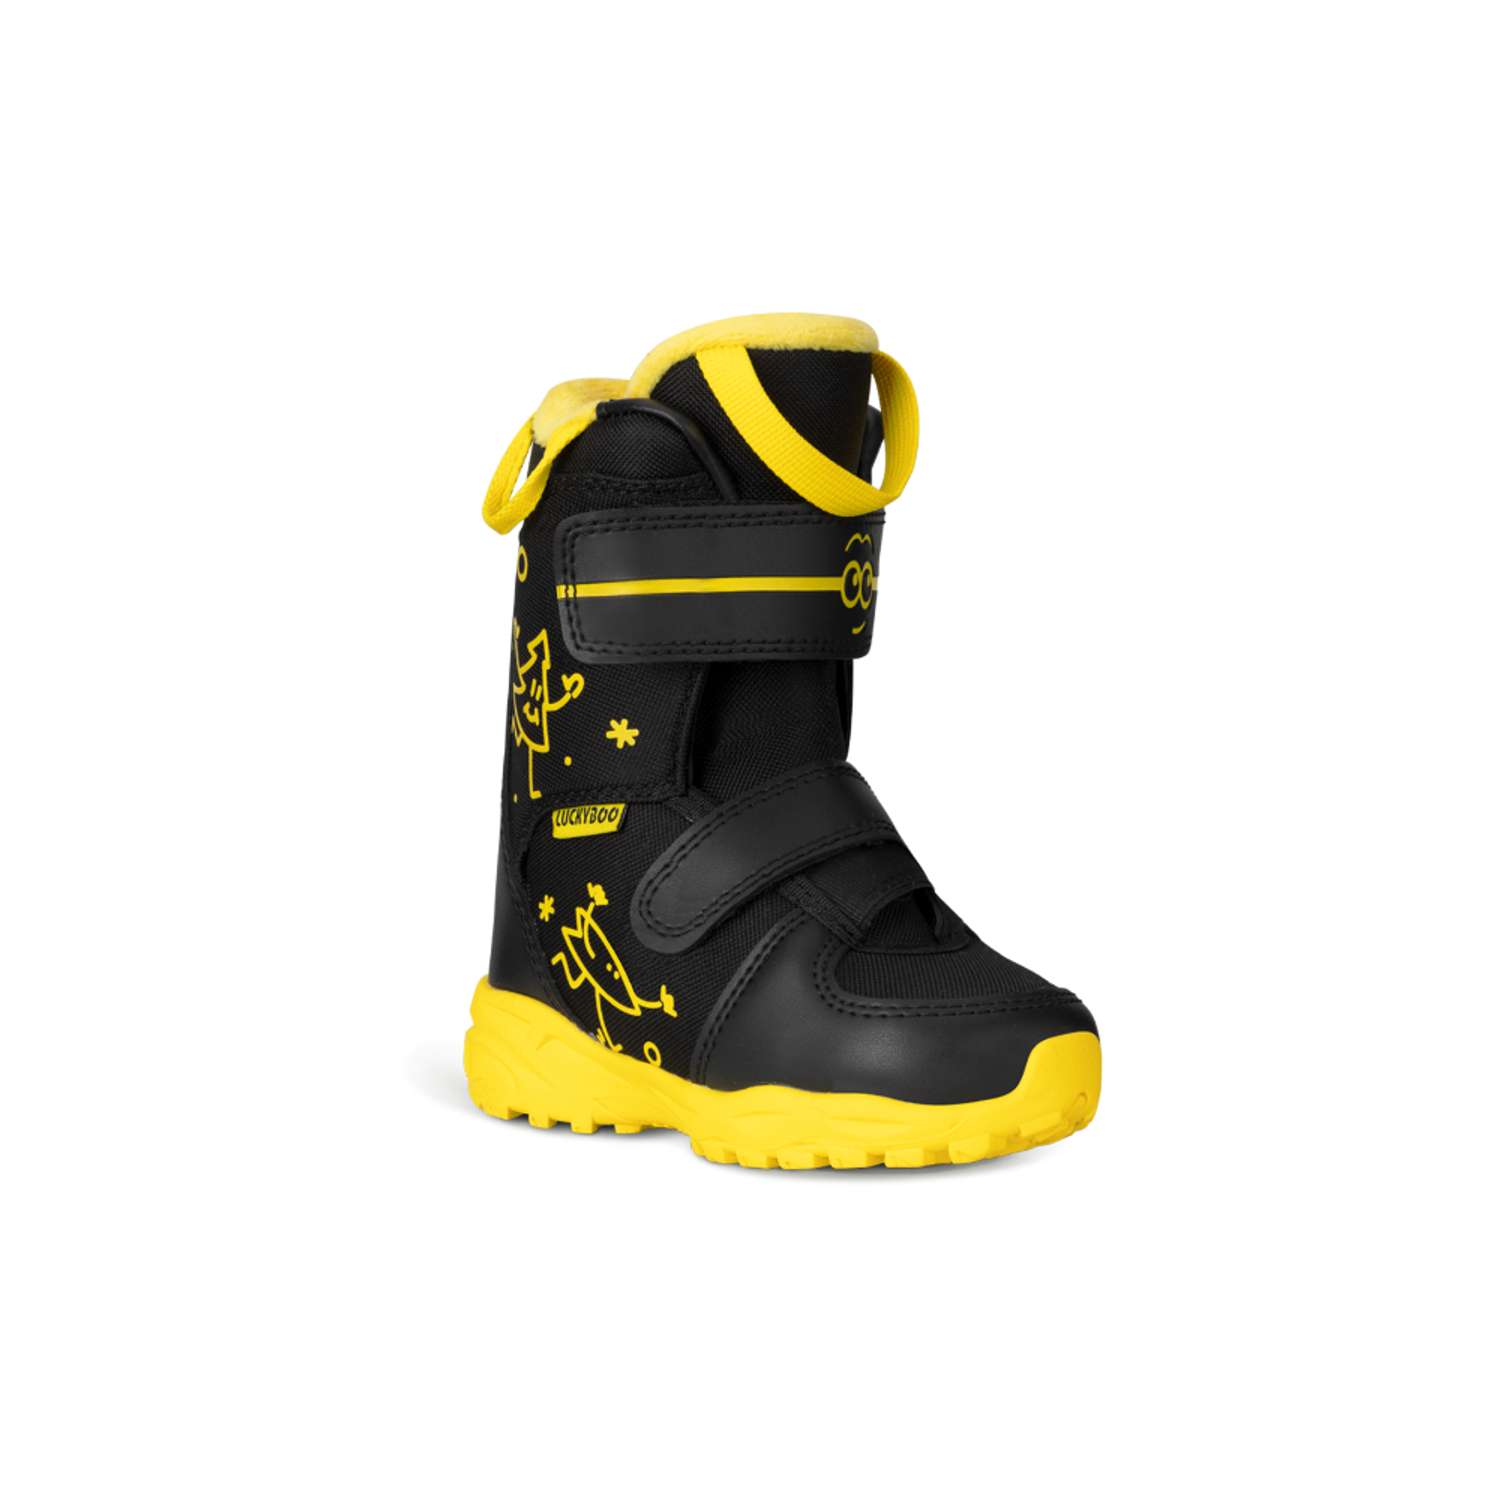 Ботинки для сноуборда Velcro Luckyboo 16cm - фото 1